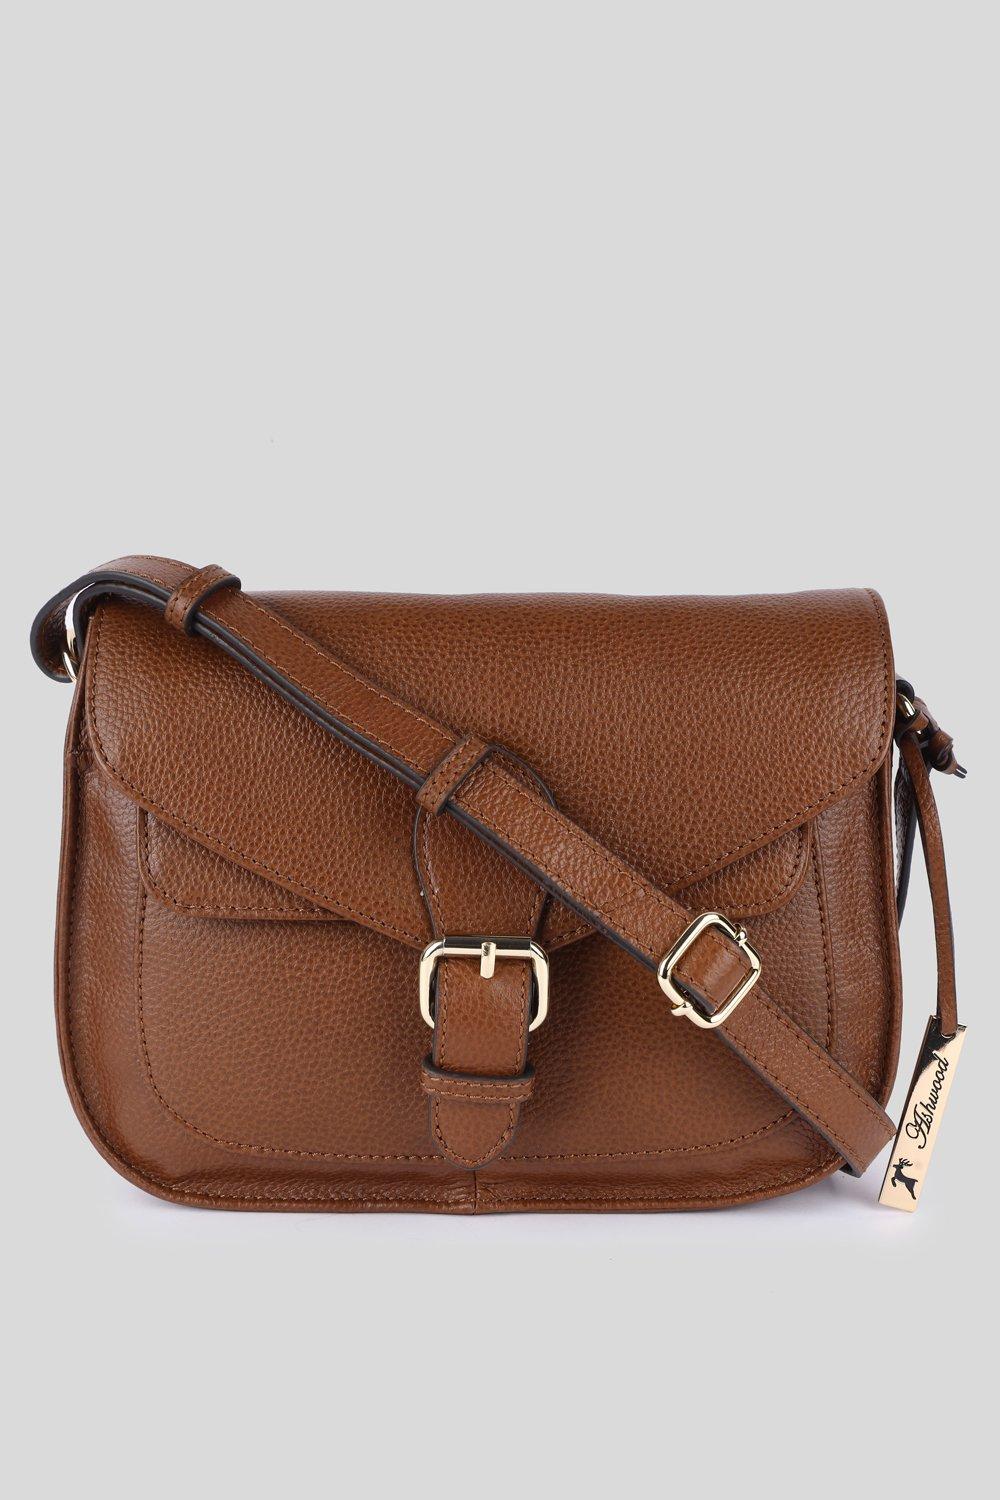 Сумка через плечо Stile Fiorentino из натуральной кожи Ashwood Leather, коричневый сумка ashwood leather 1332 tan